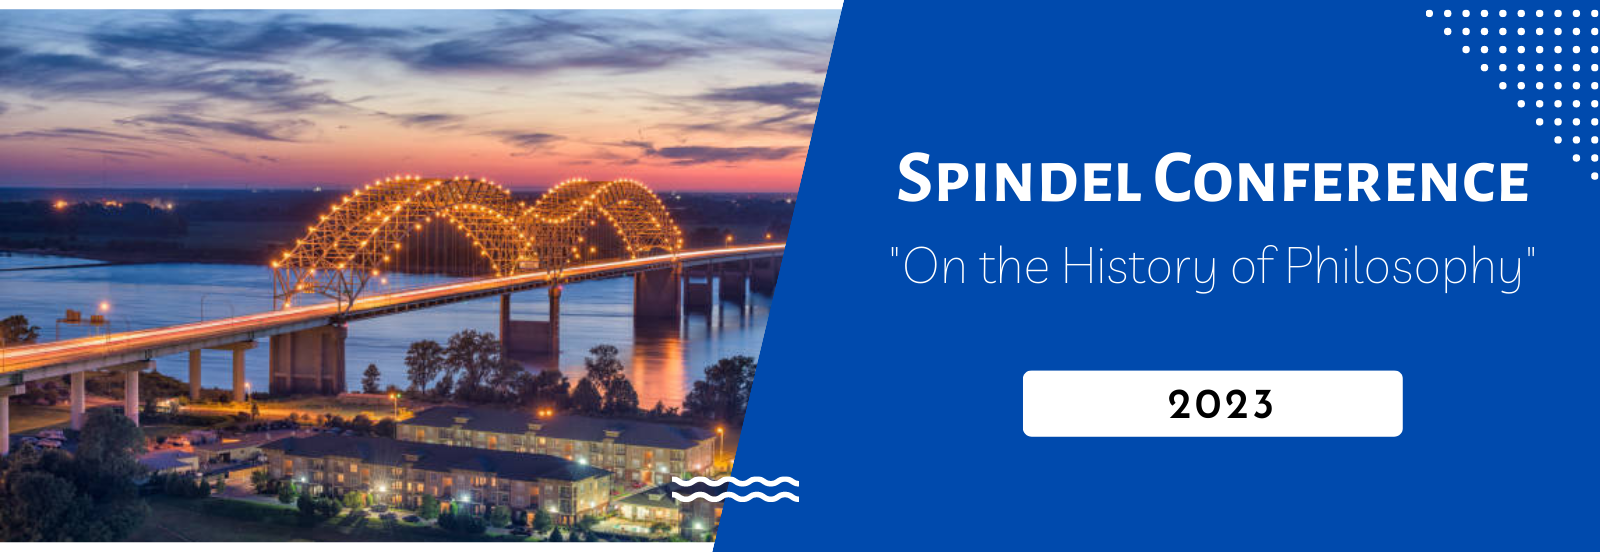 Spindel Conference 2023 banner image